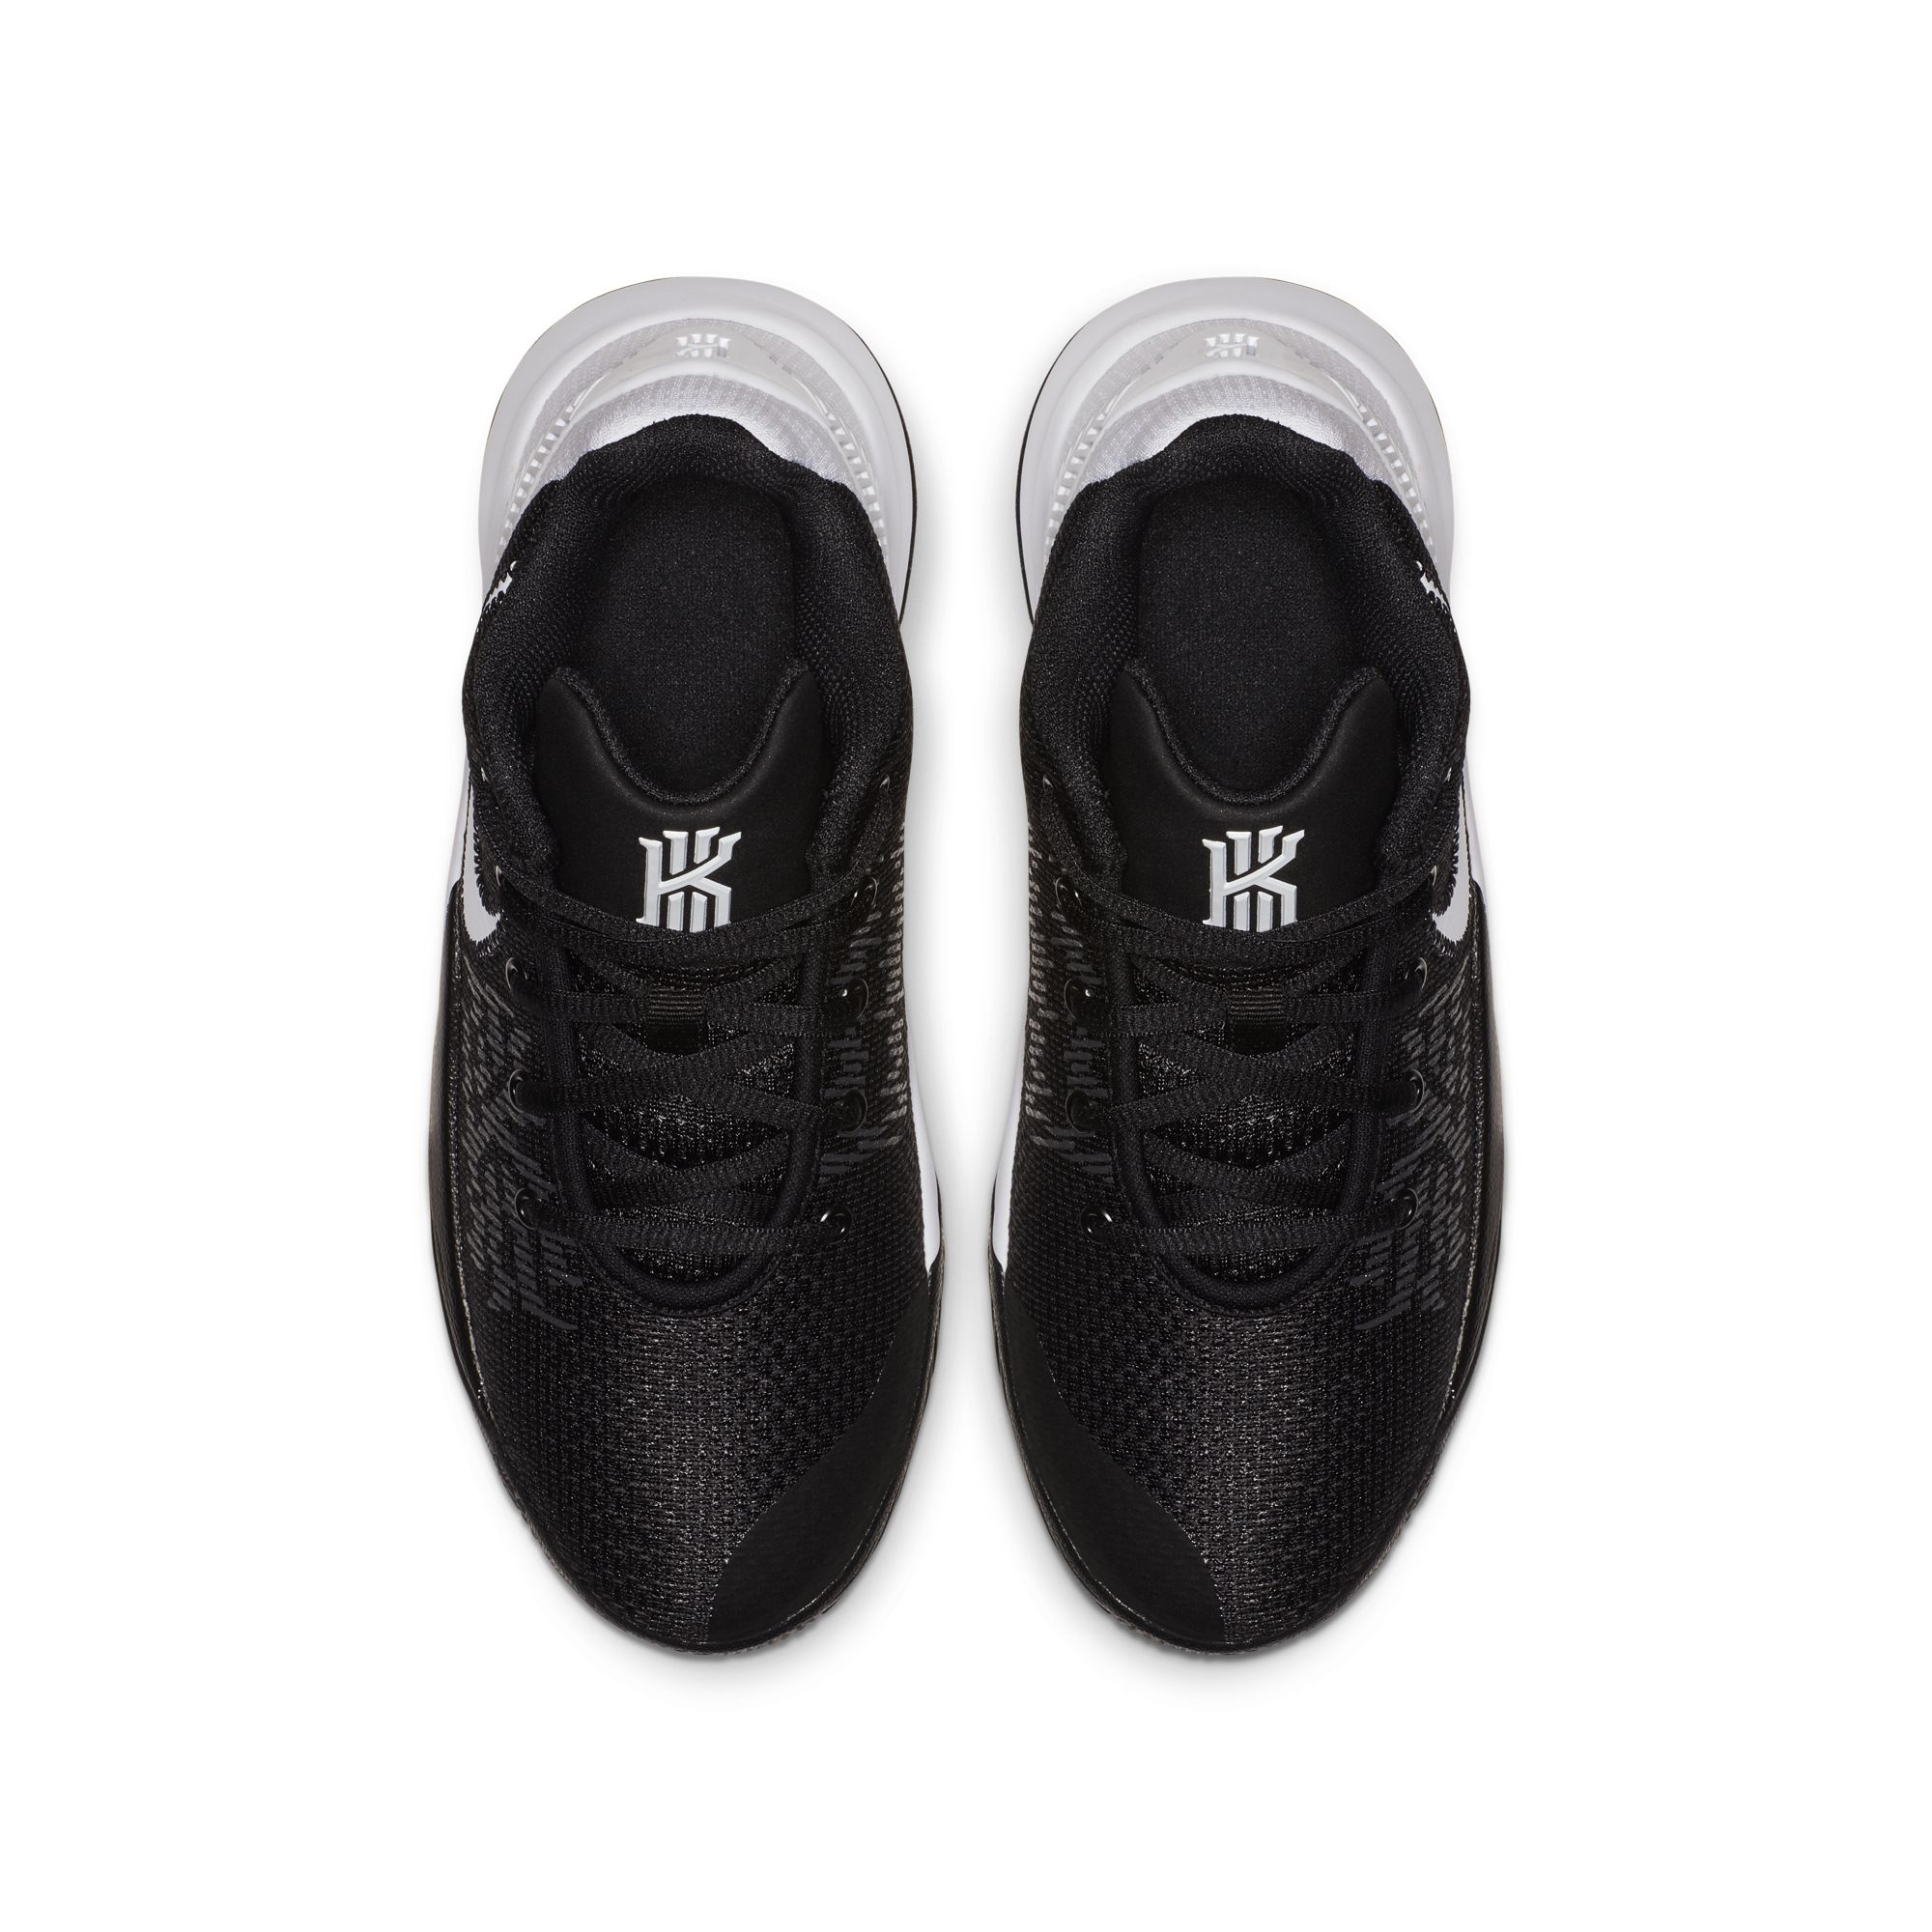 Nike Kyrie Flytrap 2 'Black:White' 2 - WearTesters